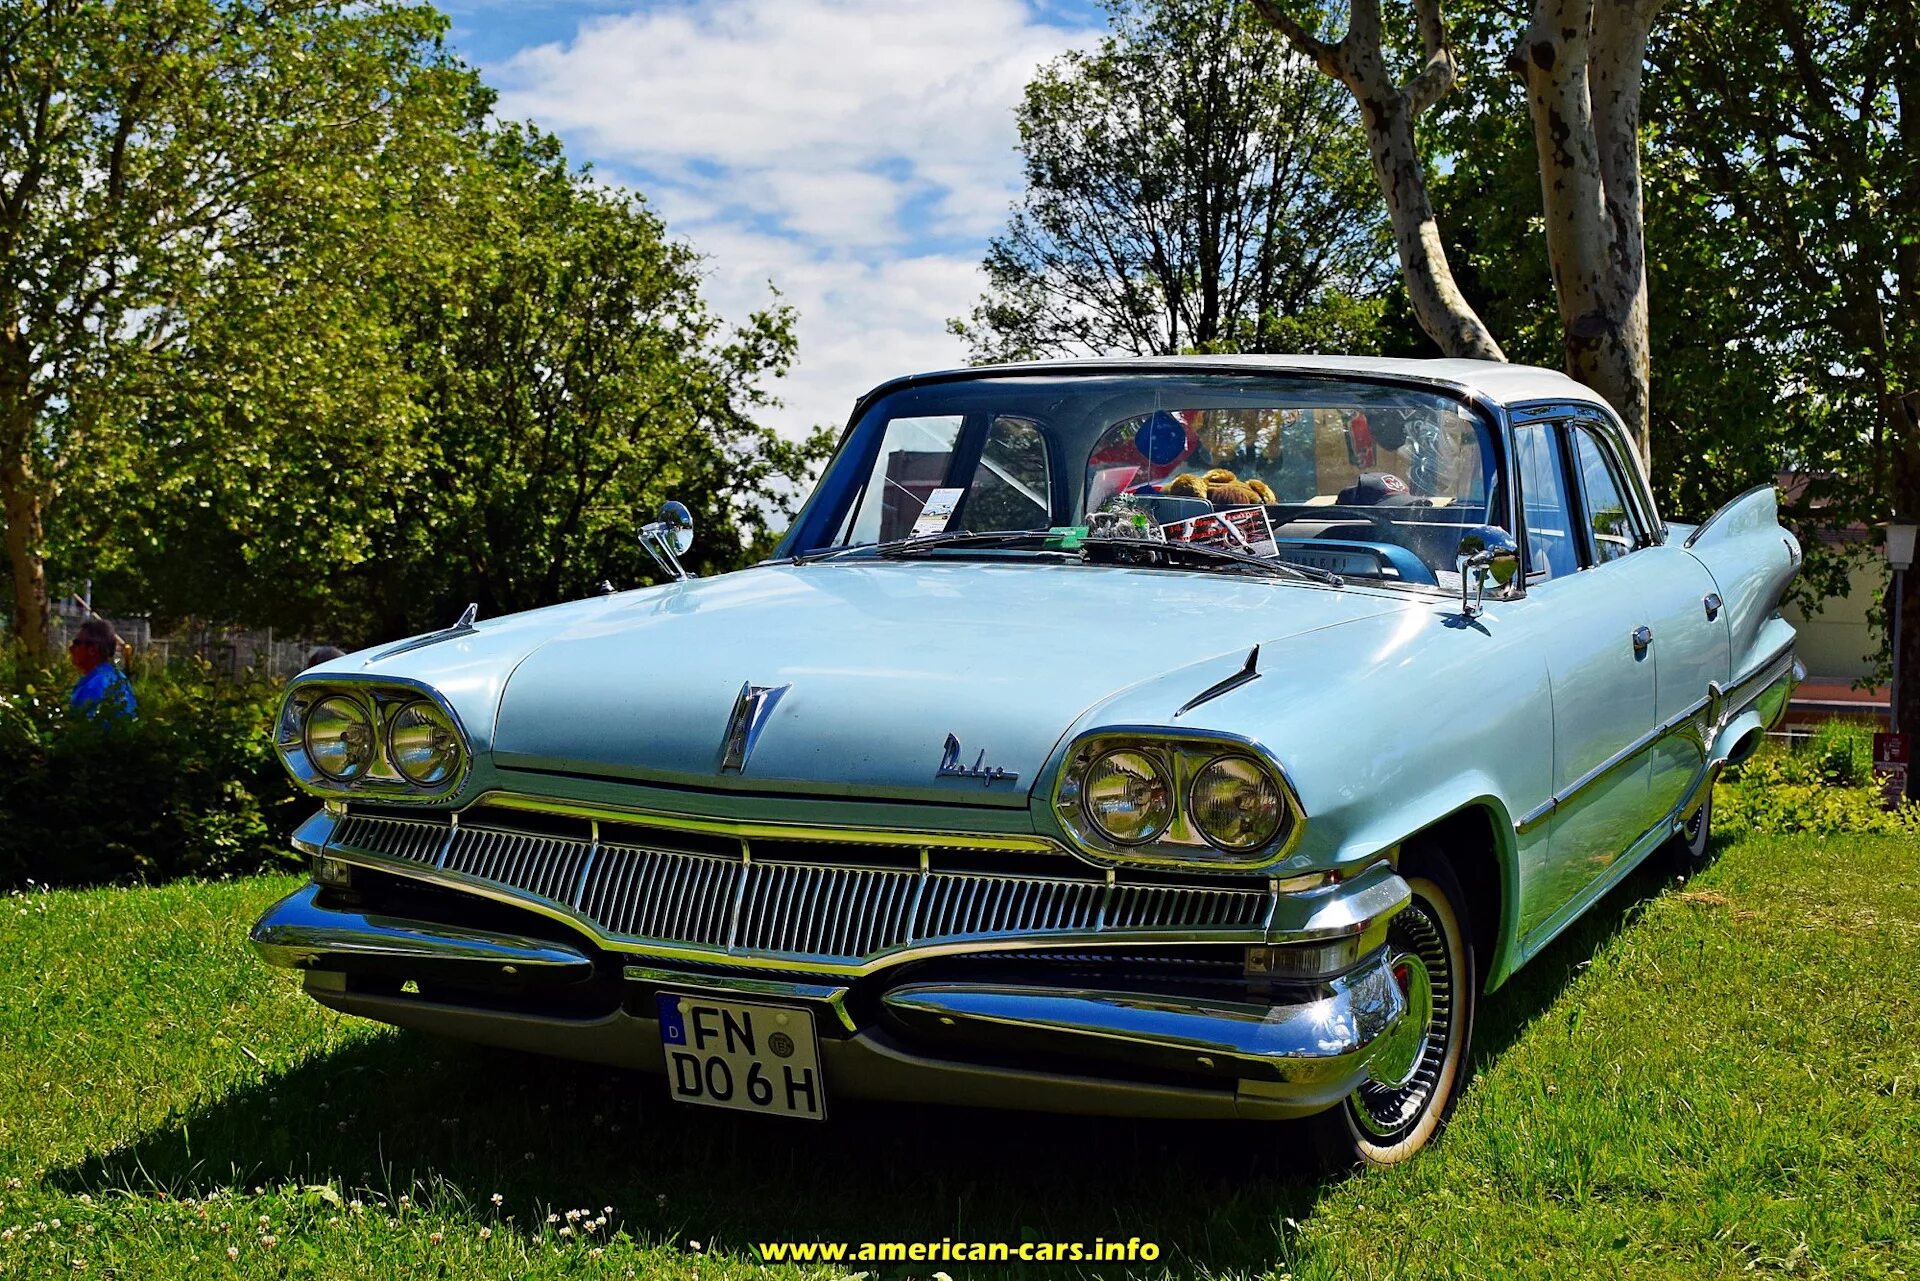 Купить американскую машину. Cadillac Eldorado '77. Кайзер 1952 авто США. Бьюик супер Ривьера 1955. Старые американские машины.